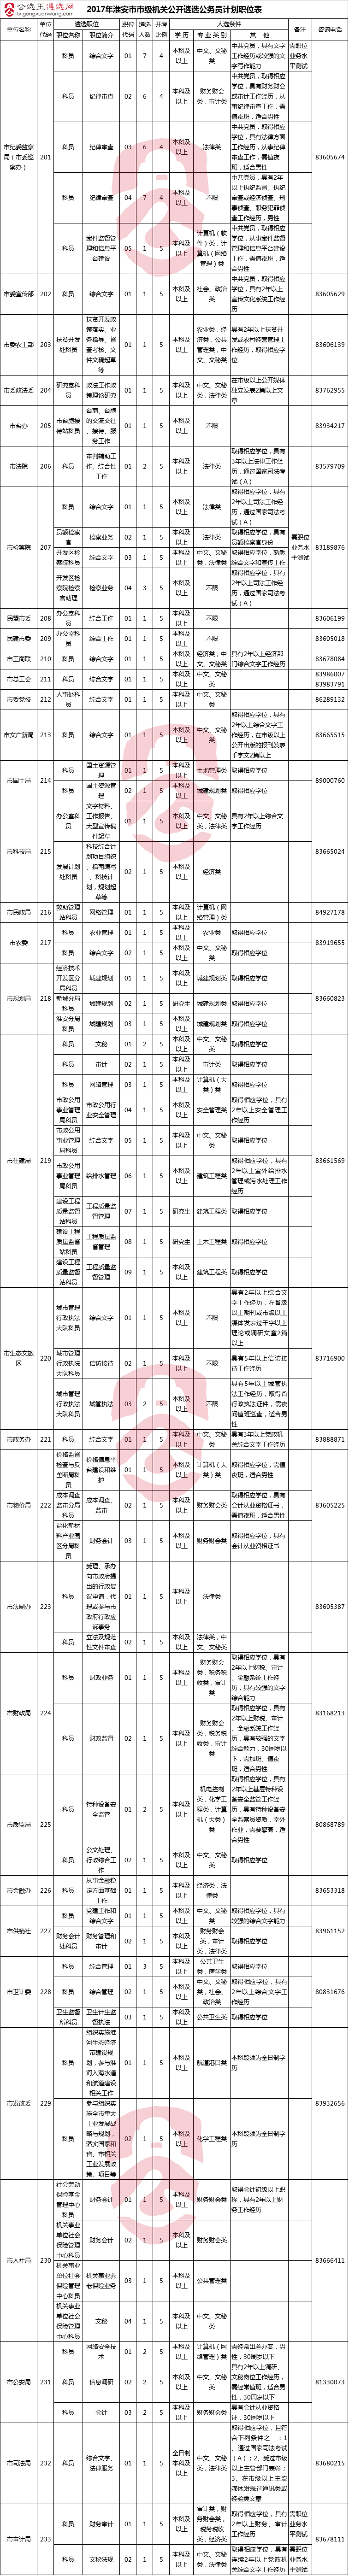 2017年淮安市市级机关公开遴选公务员计划职位表.png